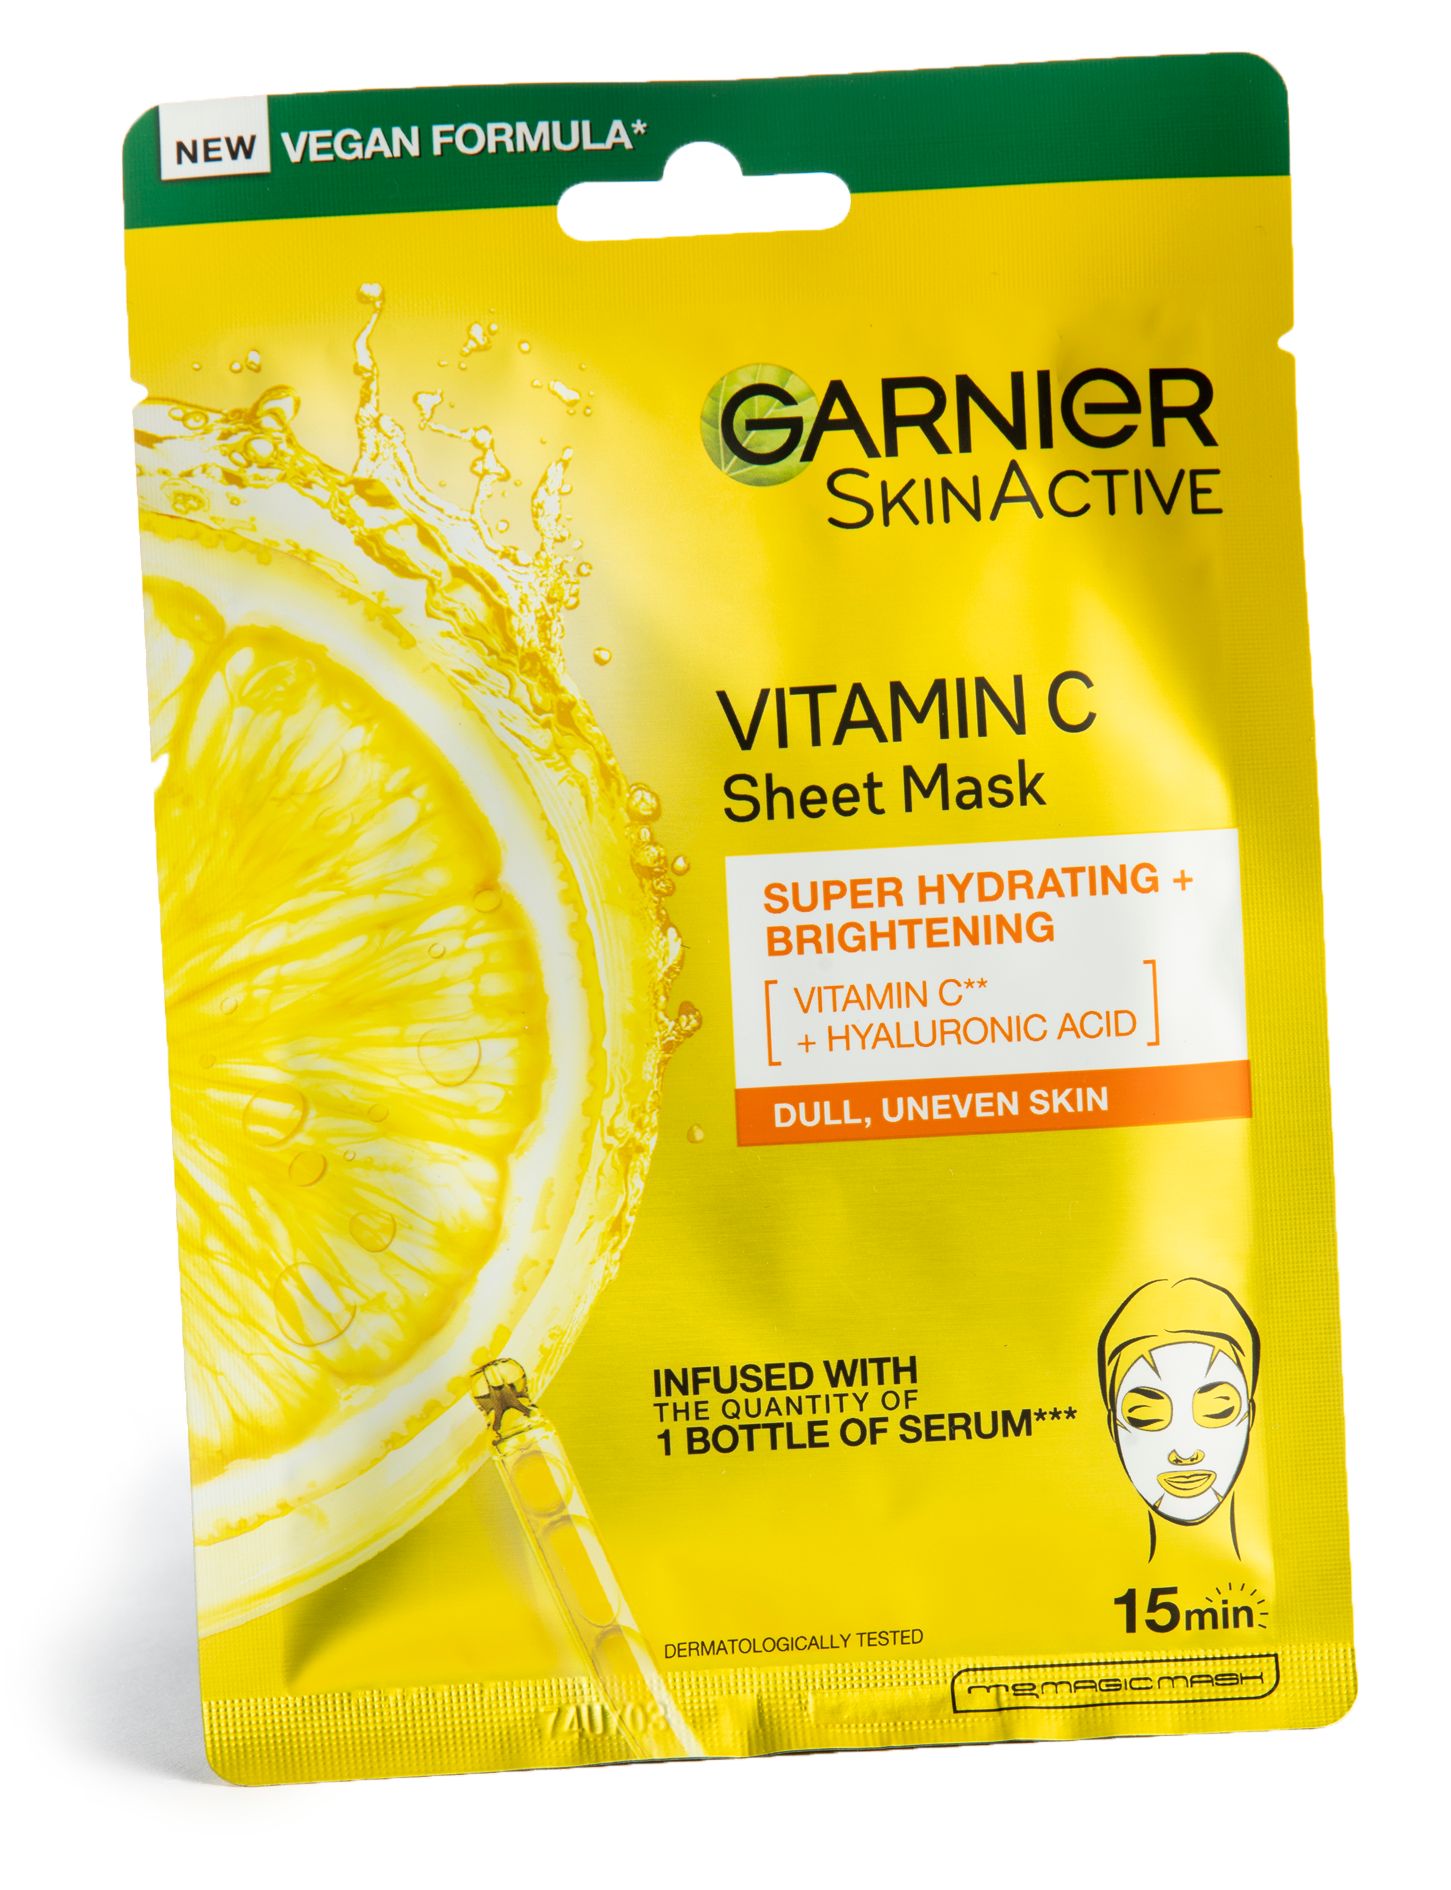 Tehokosteuttava Garnier Vitamin C Sheet mask -kasvonaamio. 3,90 €. © Tommi Tuomi